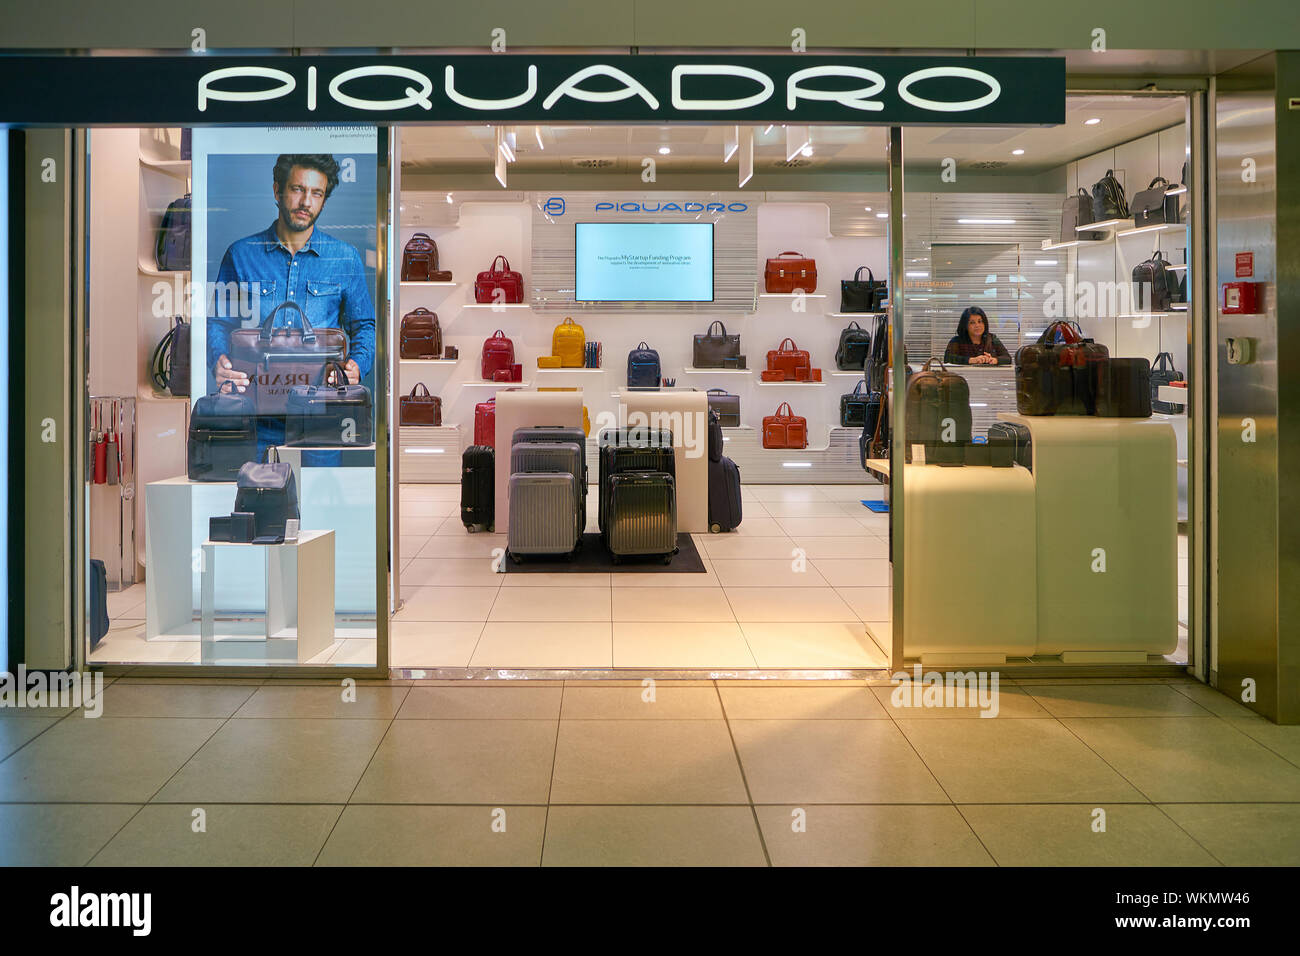 Piquadro Immagini e Fotos Stock - Alamy